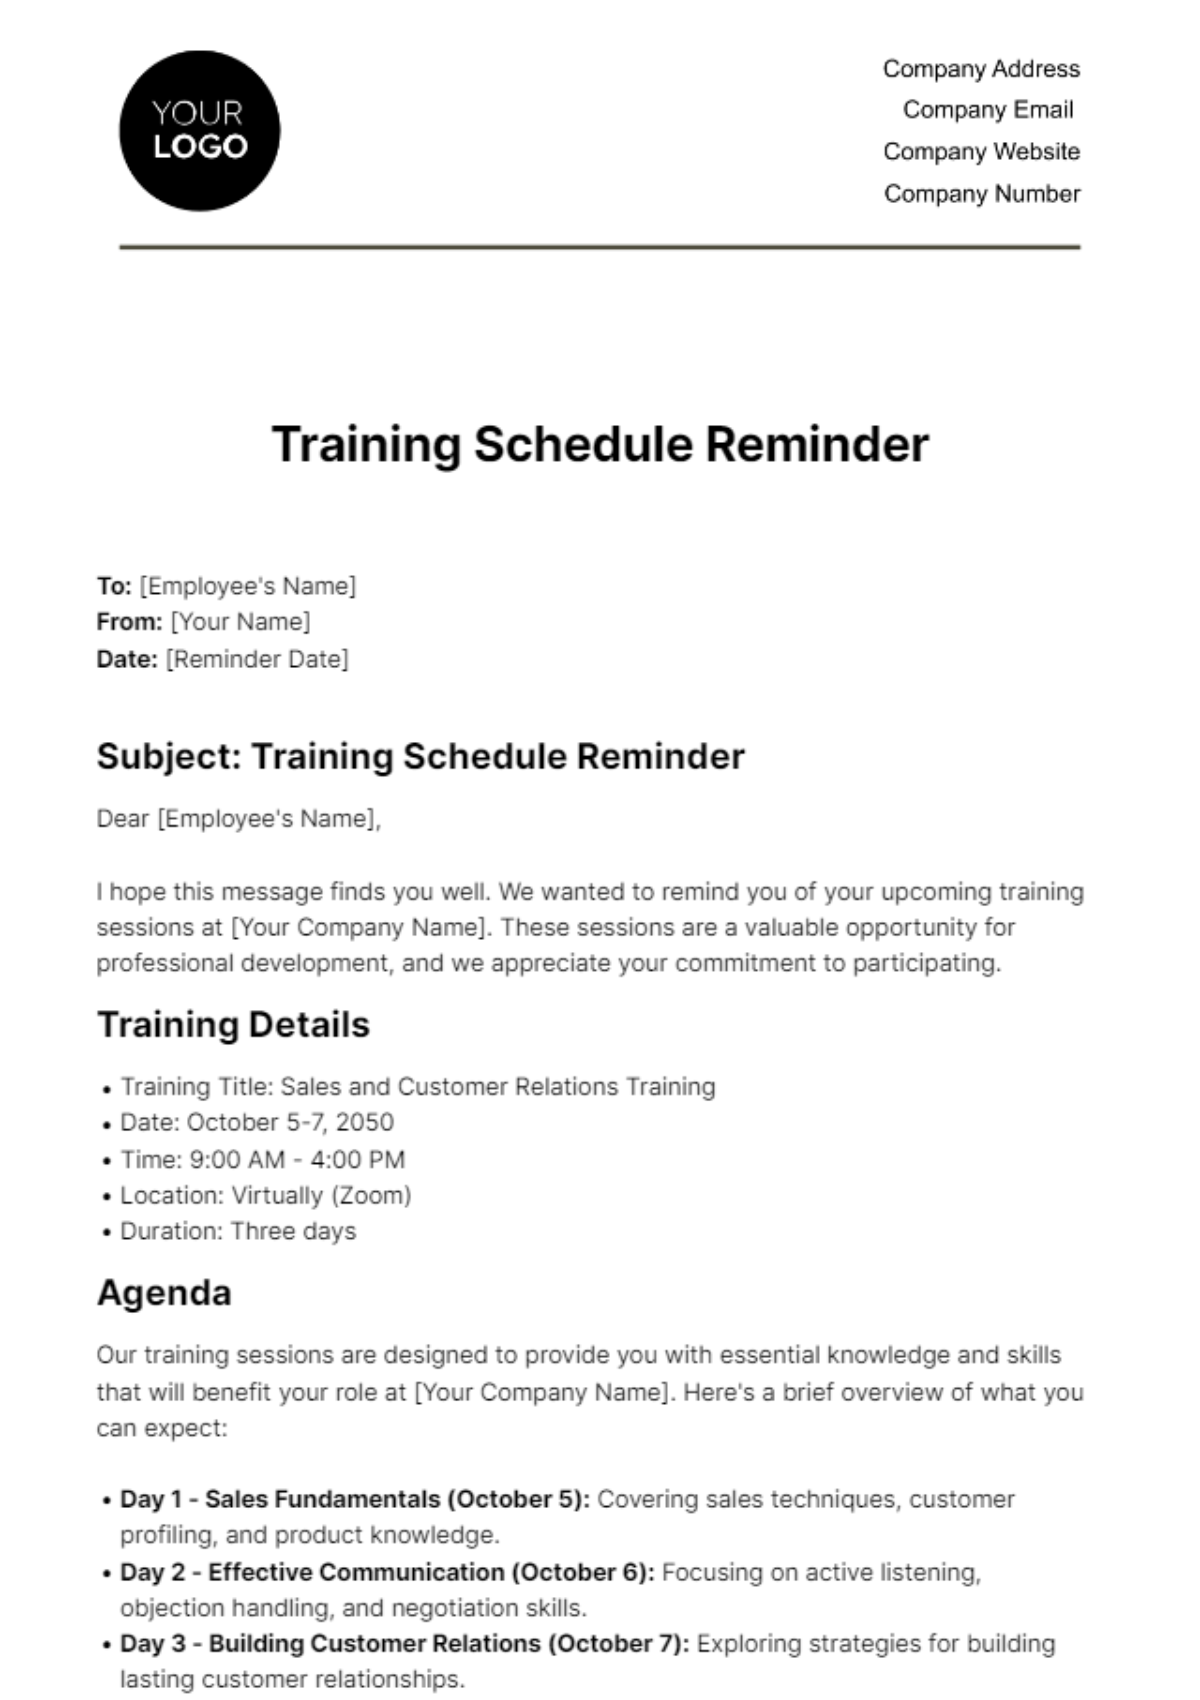 Free Training Schedule Reminder HR Template